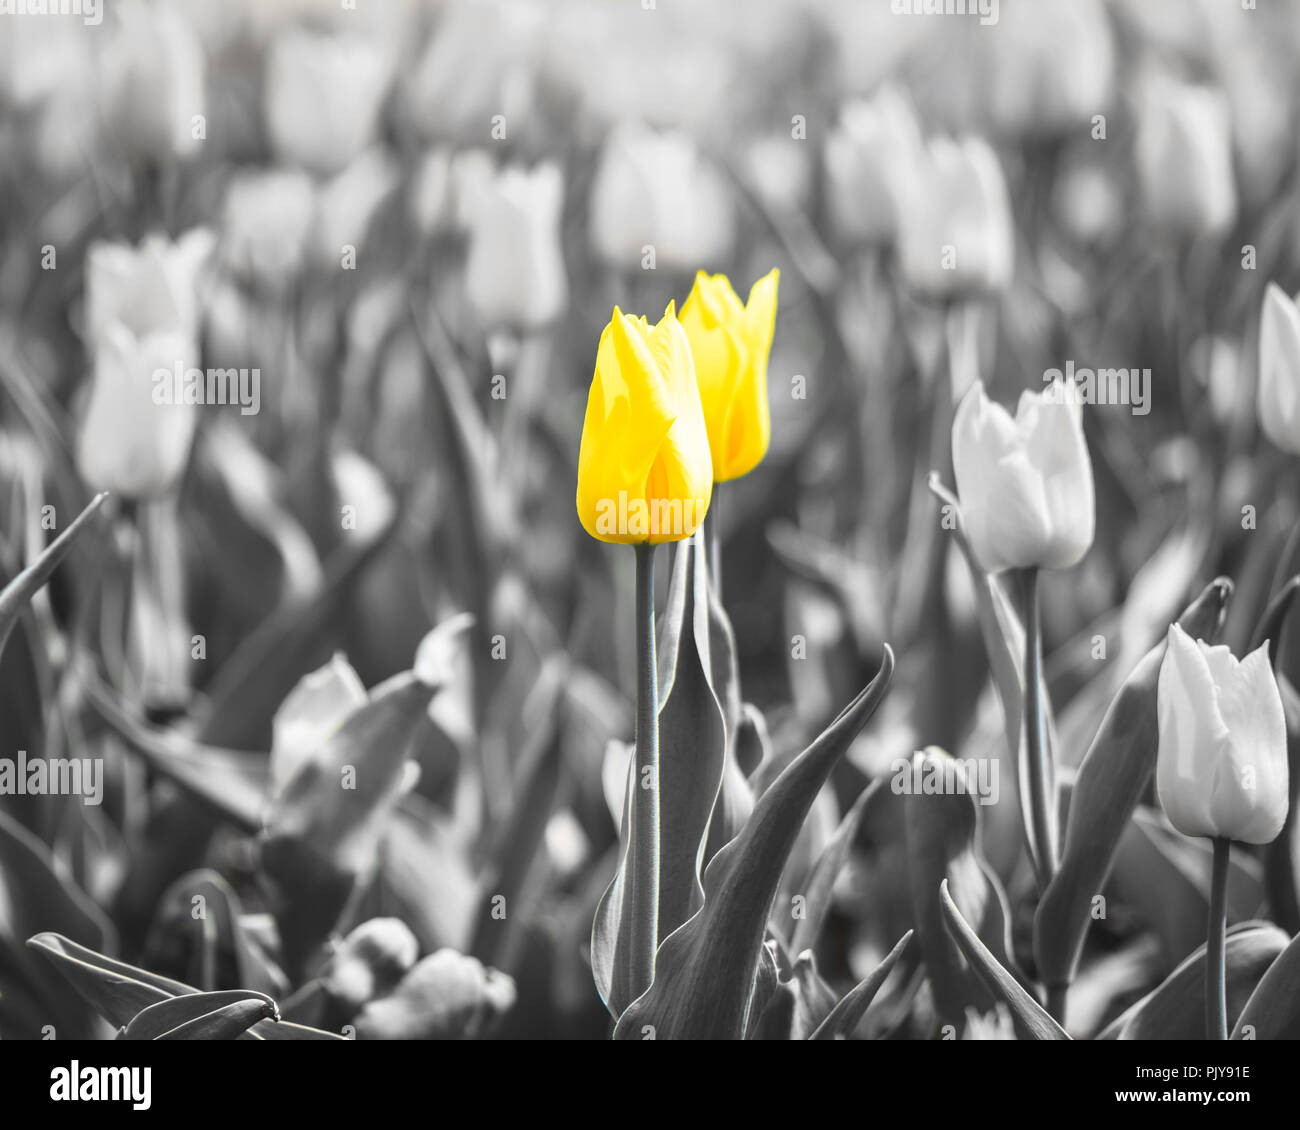 Primer plano de unos tulipanes amarillo con una bombilla resaltado y el resto en blanco y negro Foto de stock